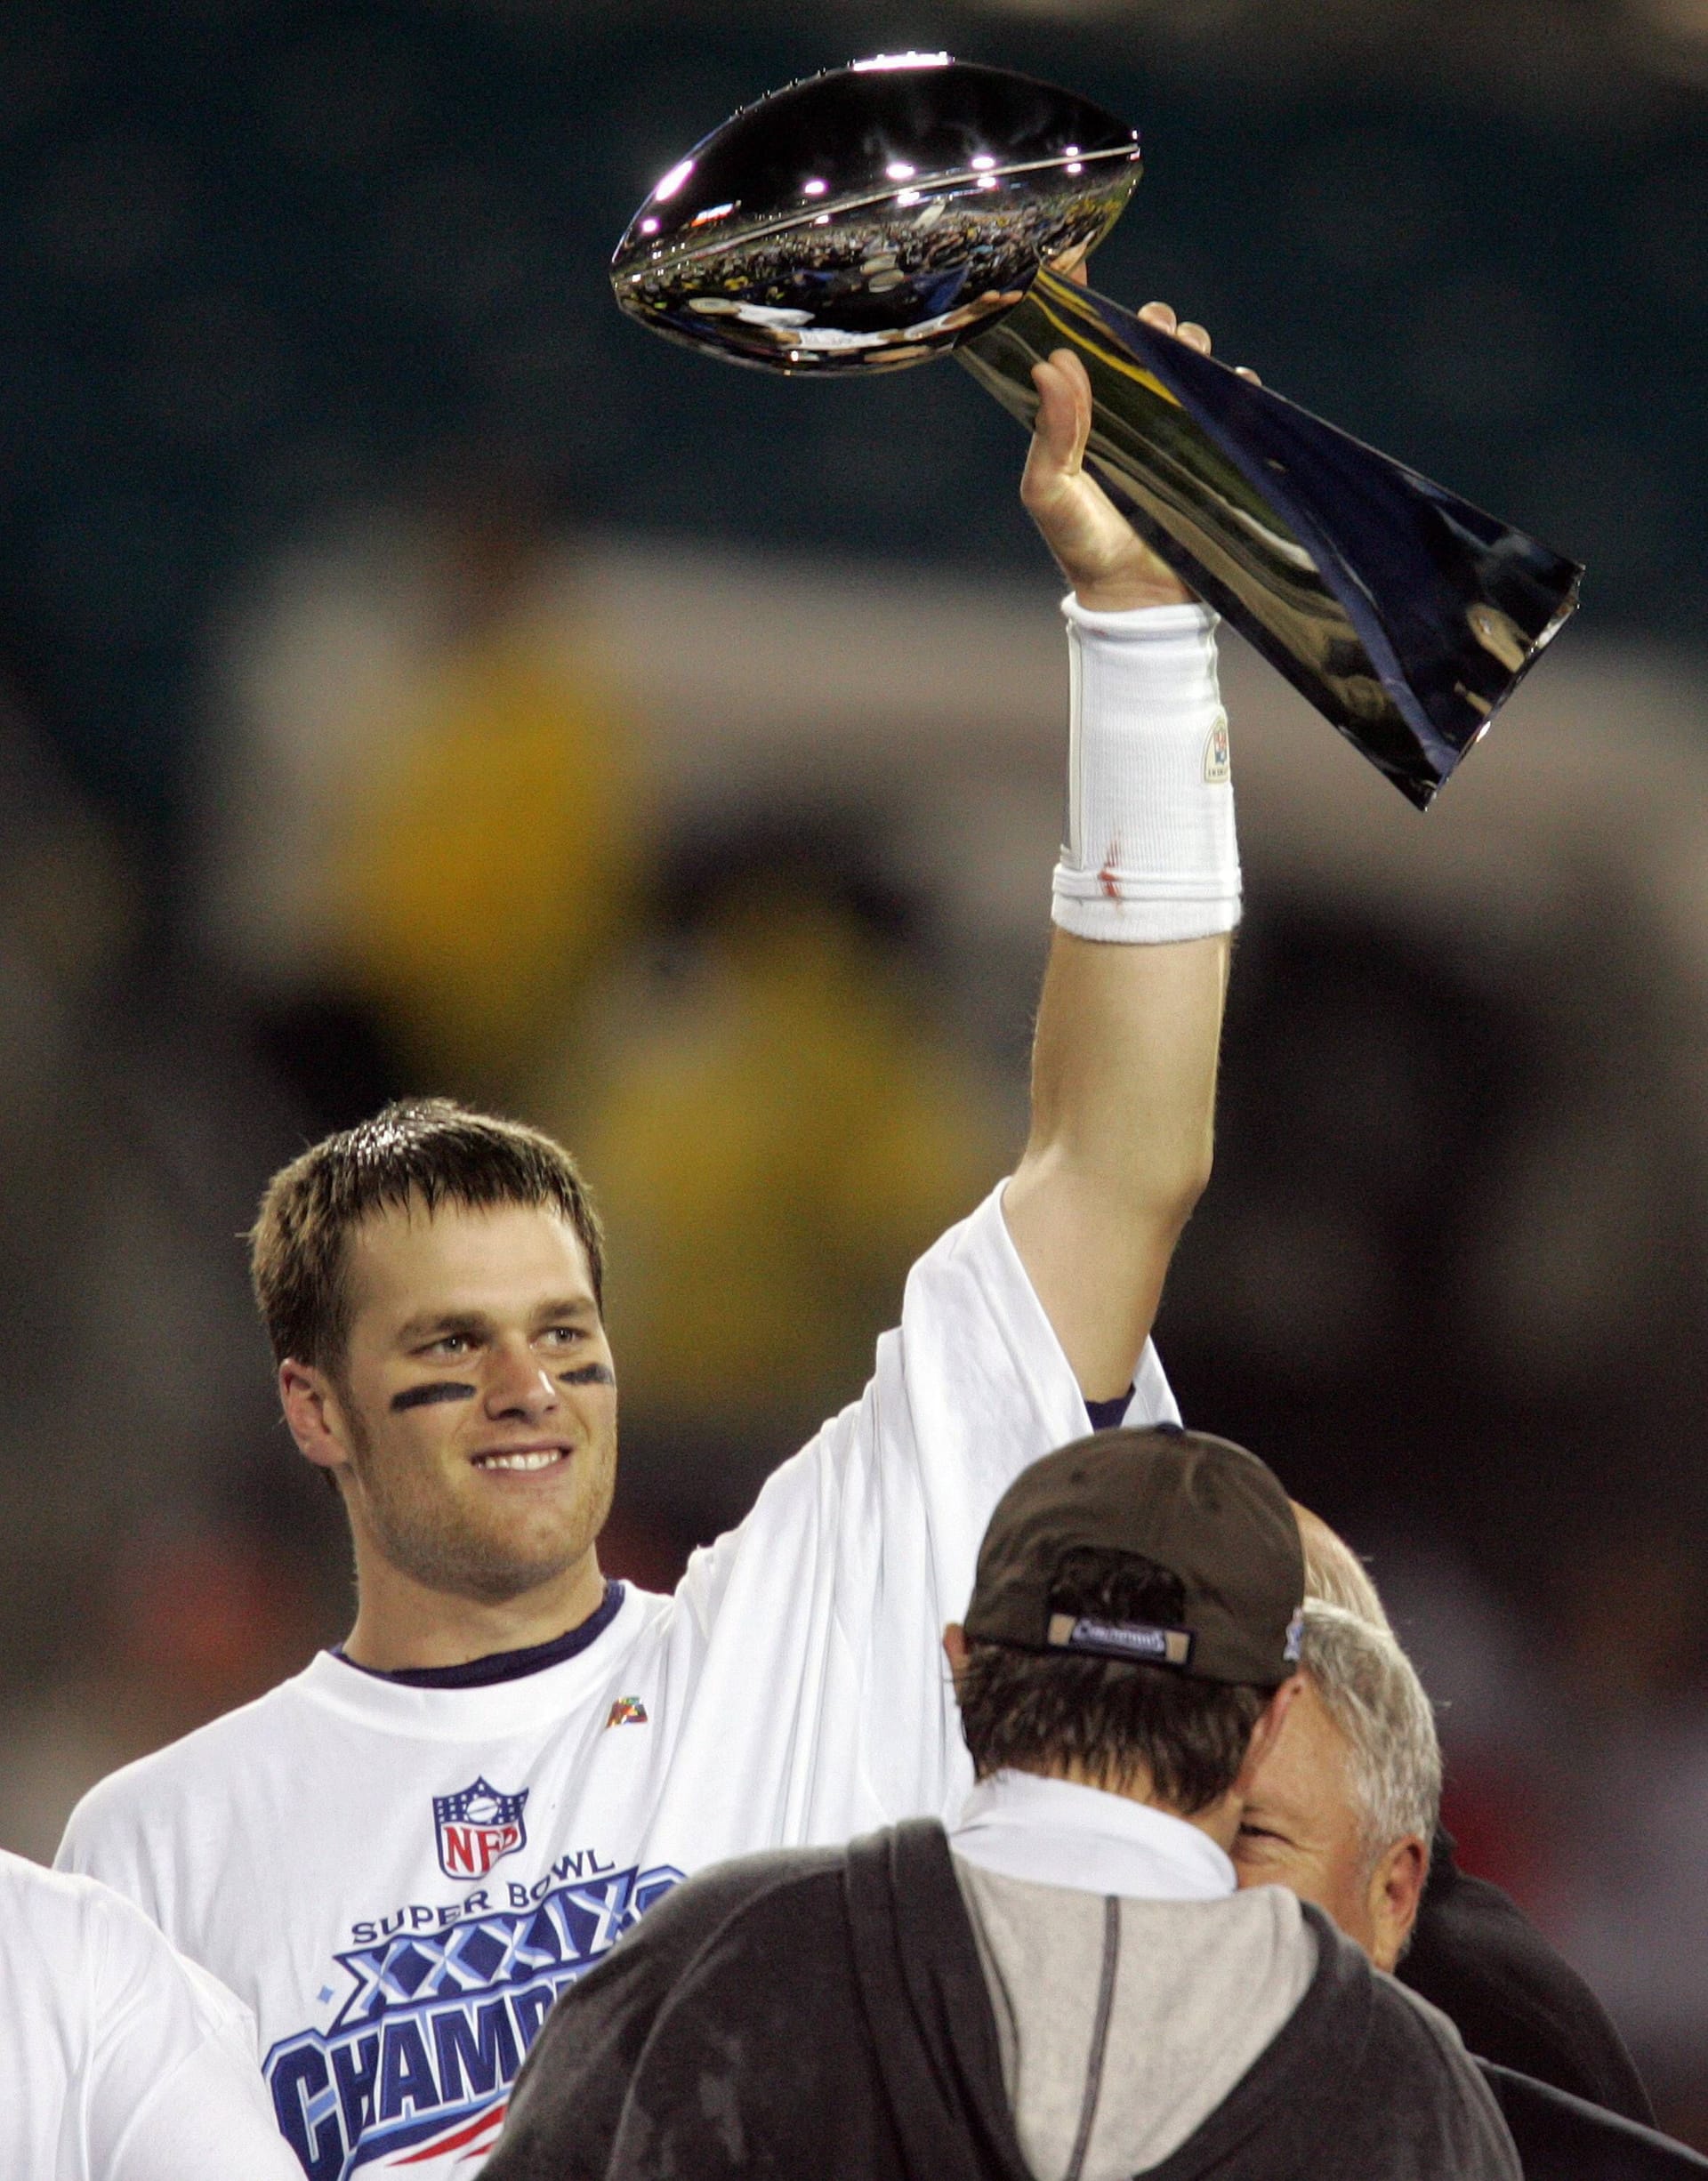 Auch in der Saison 2004 schafften es die Patriots wieder in den Super Bowl und bezwangen die Philadelphia Eagles mit 24:21. Zum dritten Mal in vier Jahren durfte Brady die Vince-Lombardi-Trophy in die Höhe stemmen.